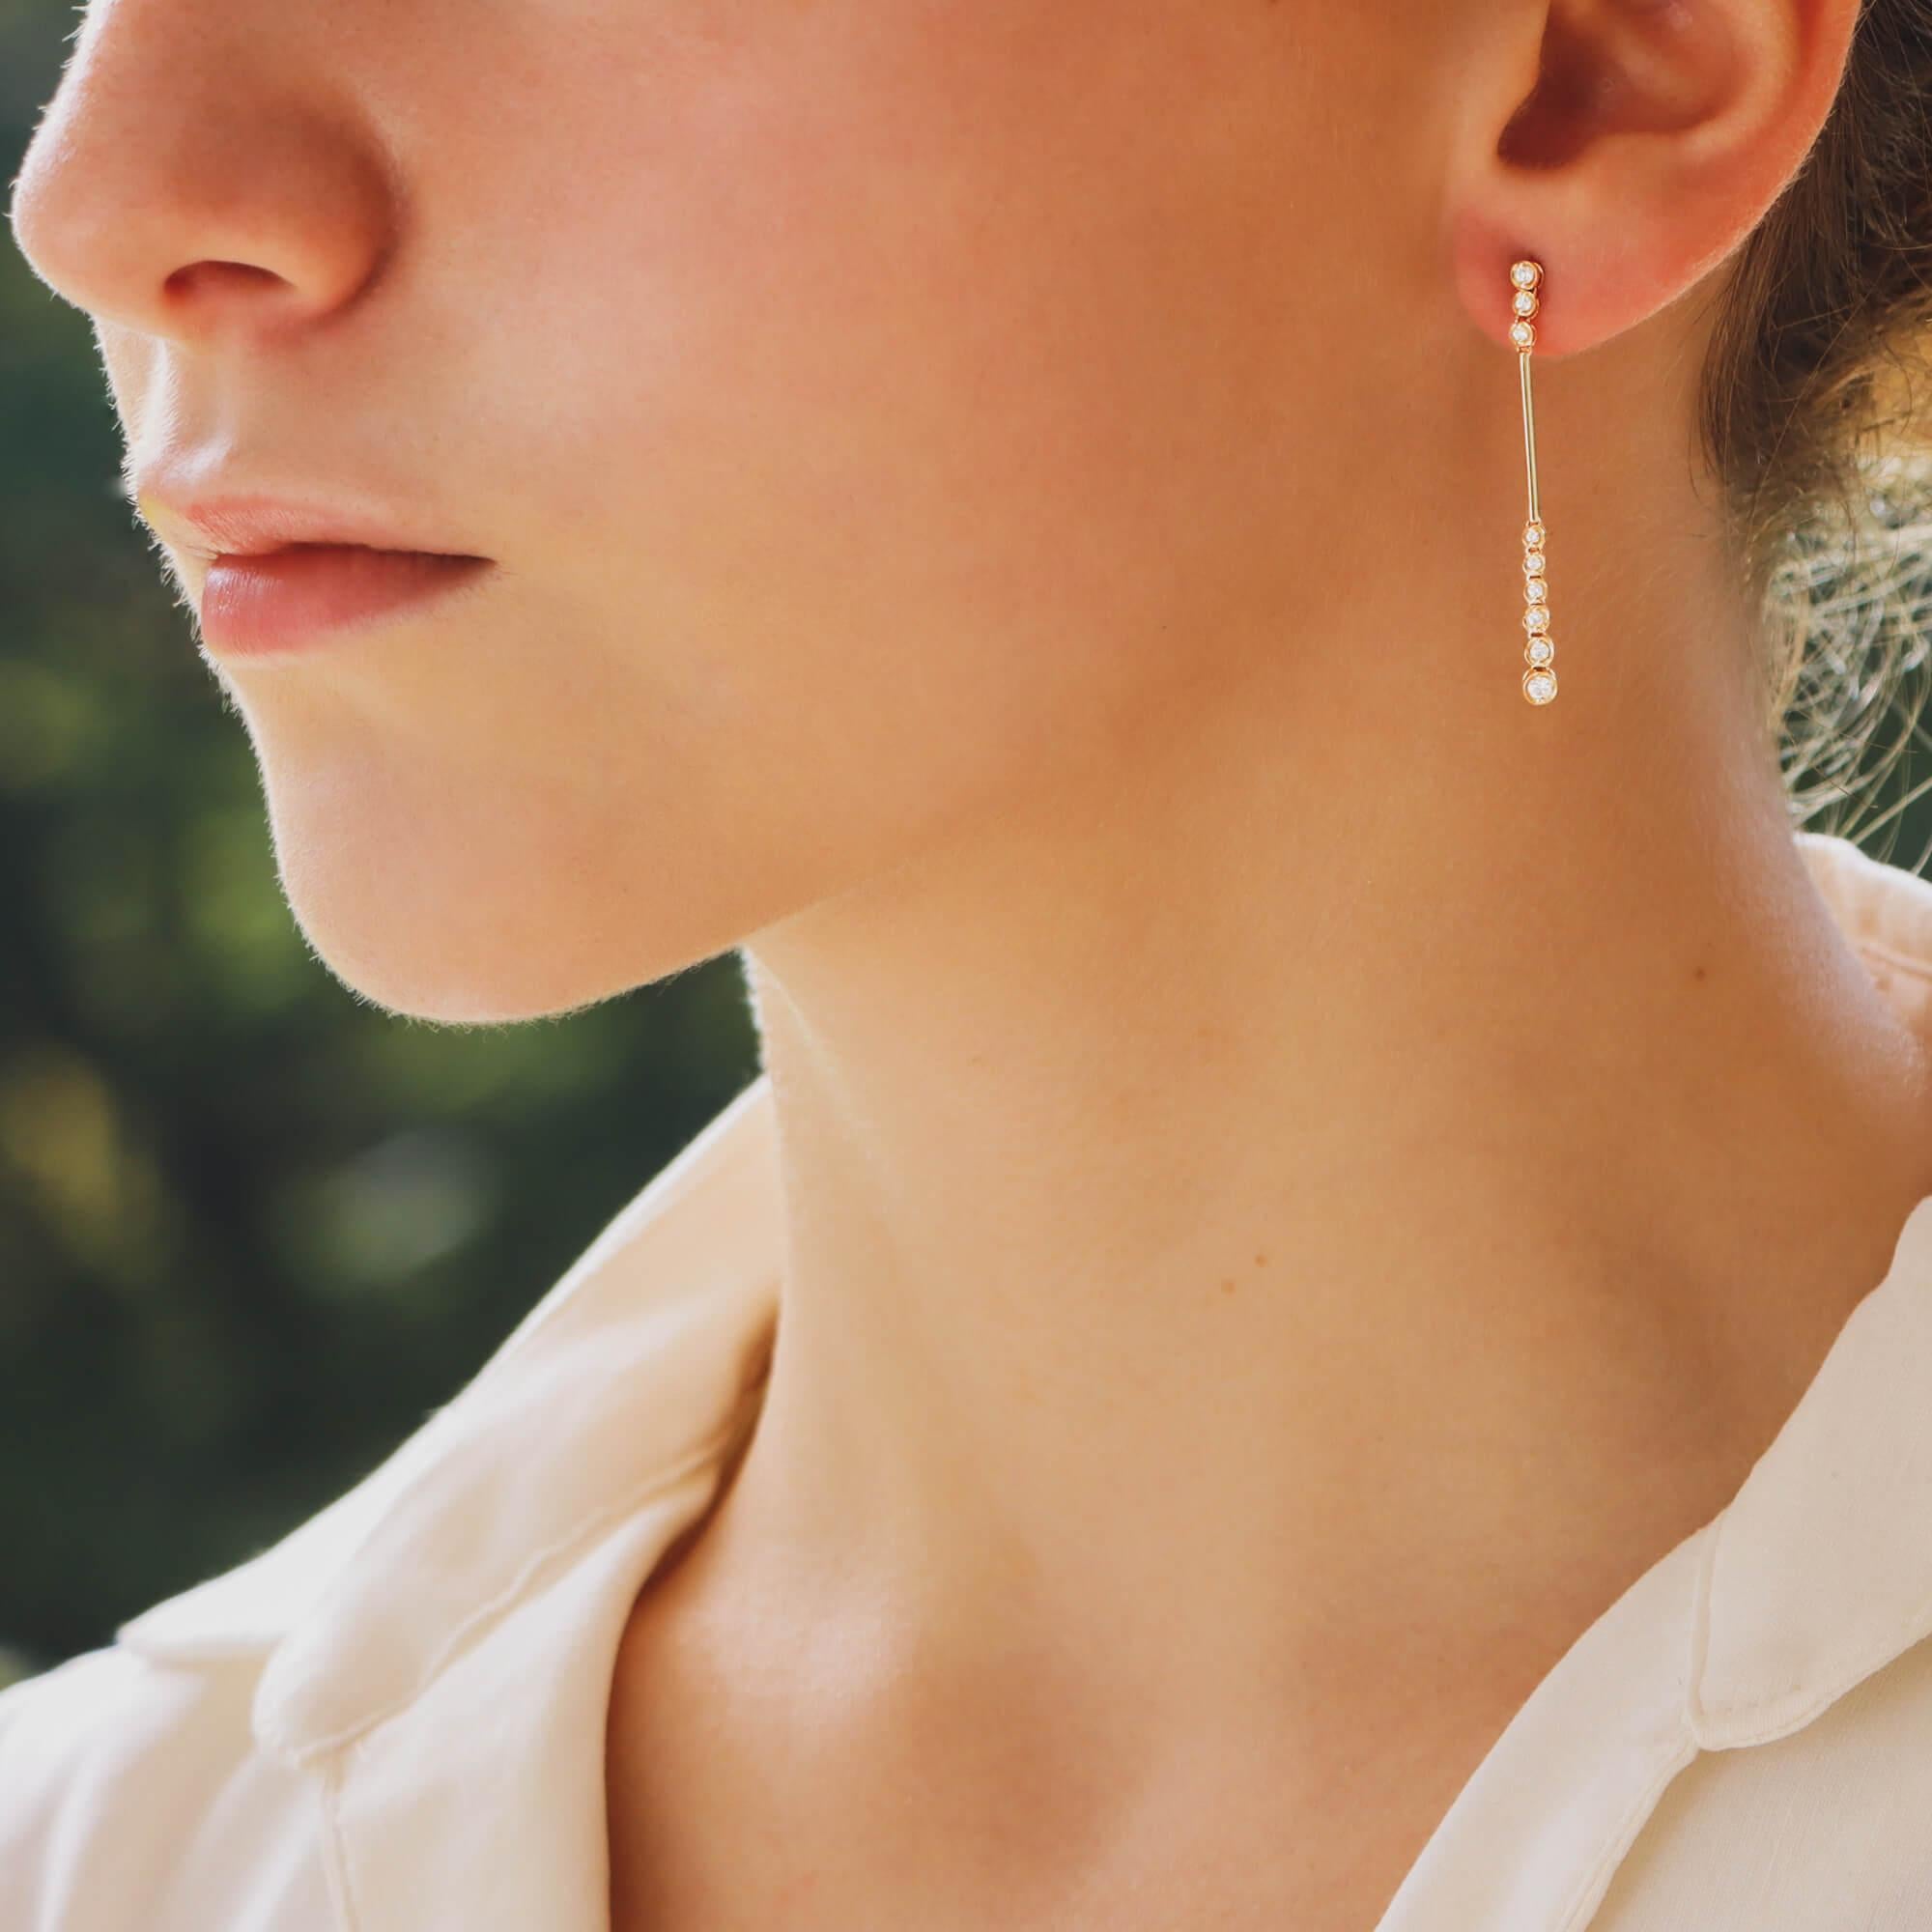 Ein schönes Paar Diamant-Ohrringe in 18 Karat Gelbgold.

Jeder Ohrring besteht aus einem einfachen, schlanken Tropfen. Oben sind drei runde Diamanten im Brillantschliff eingearbeitet, die an einem massiven Barren aus 18 Karat Gelbgold hängen. Von